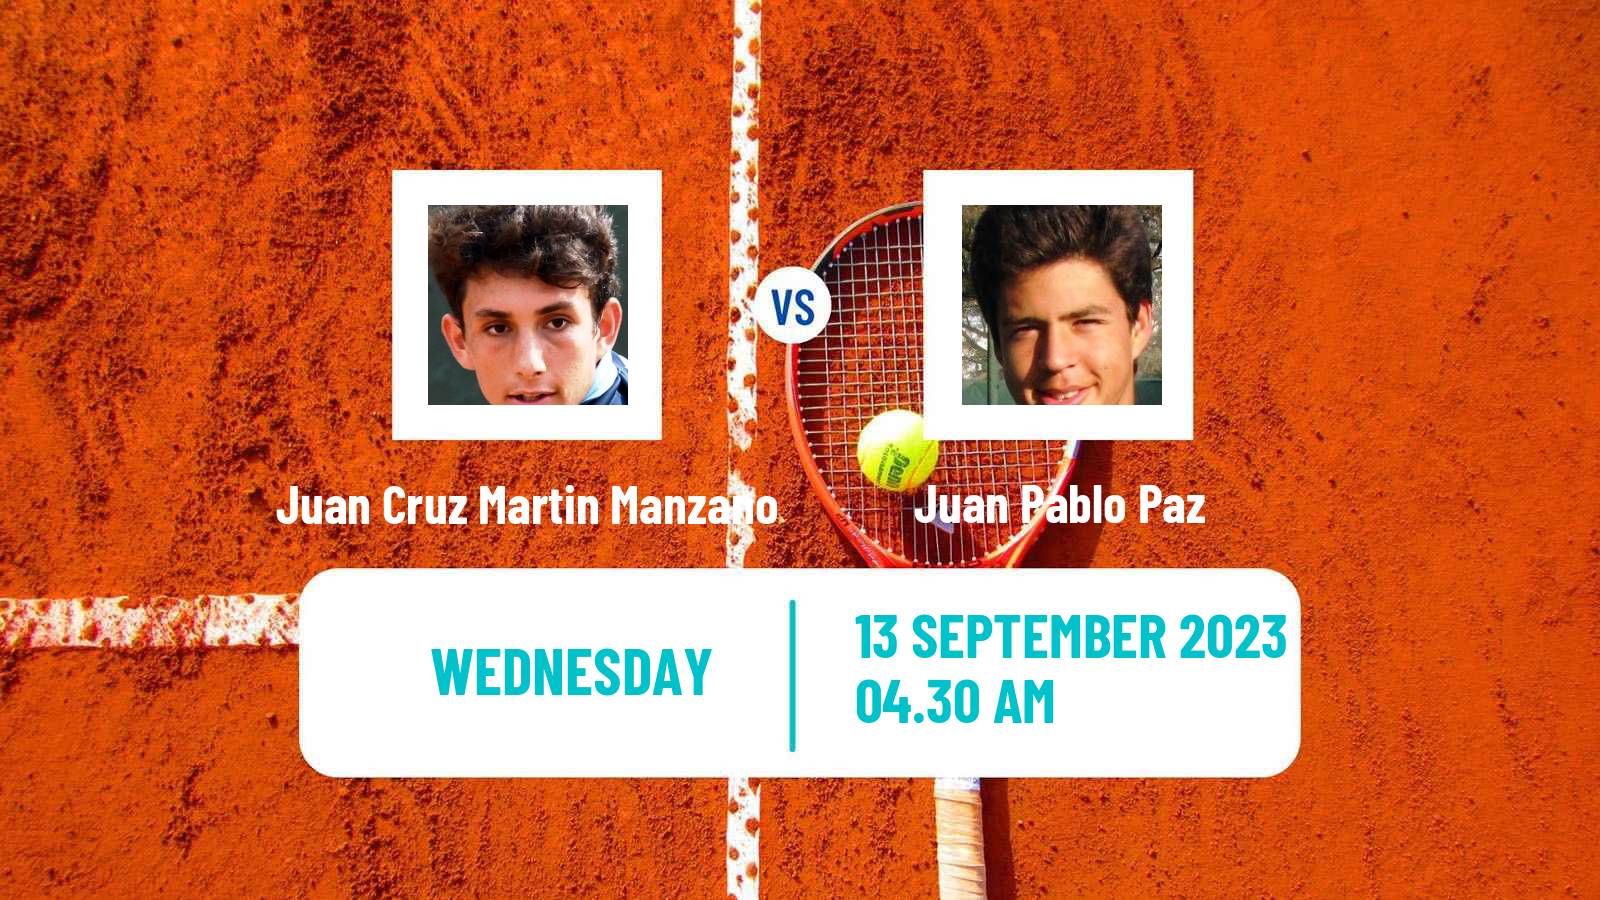 Tennis ITF M15 Satu Mare Men Juan Cruz Martin Manzano - Juan Pablo Paz